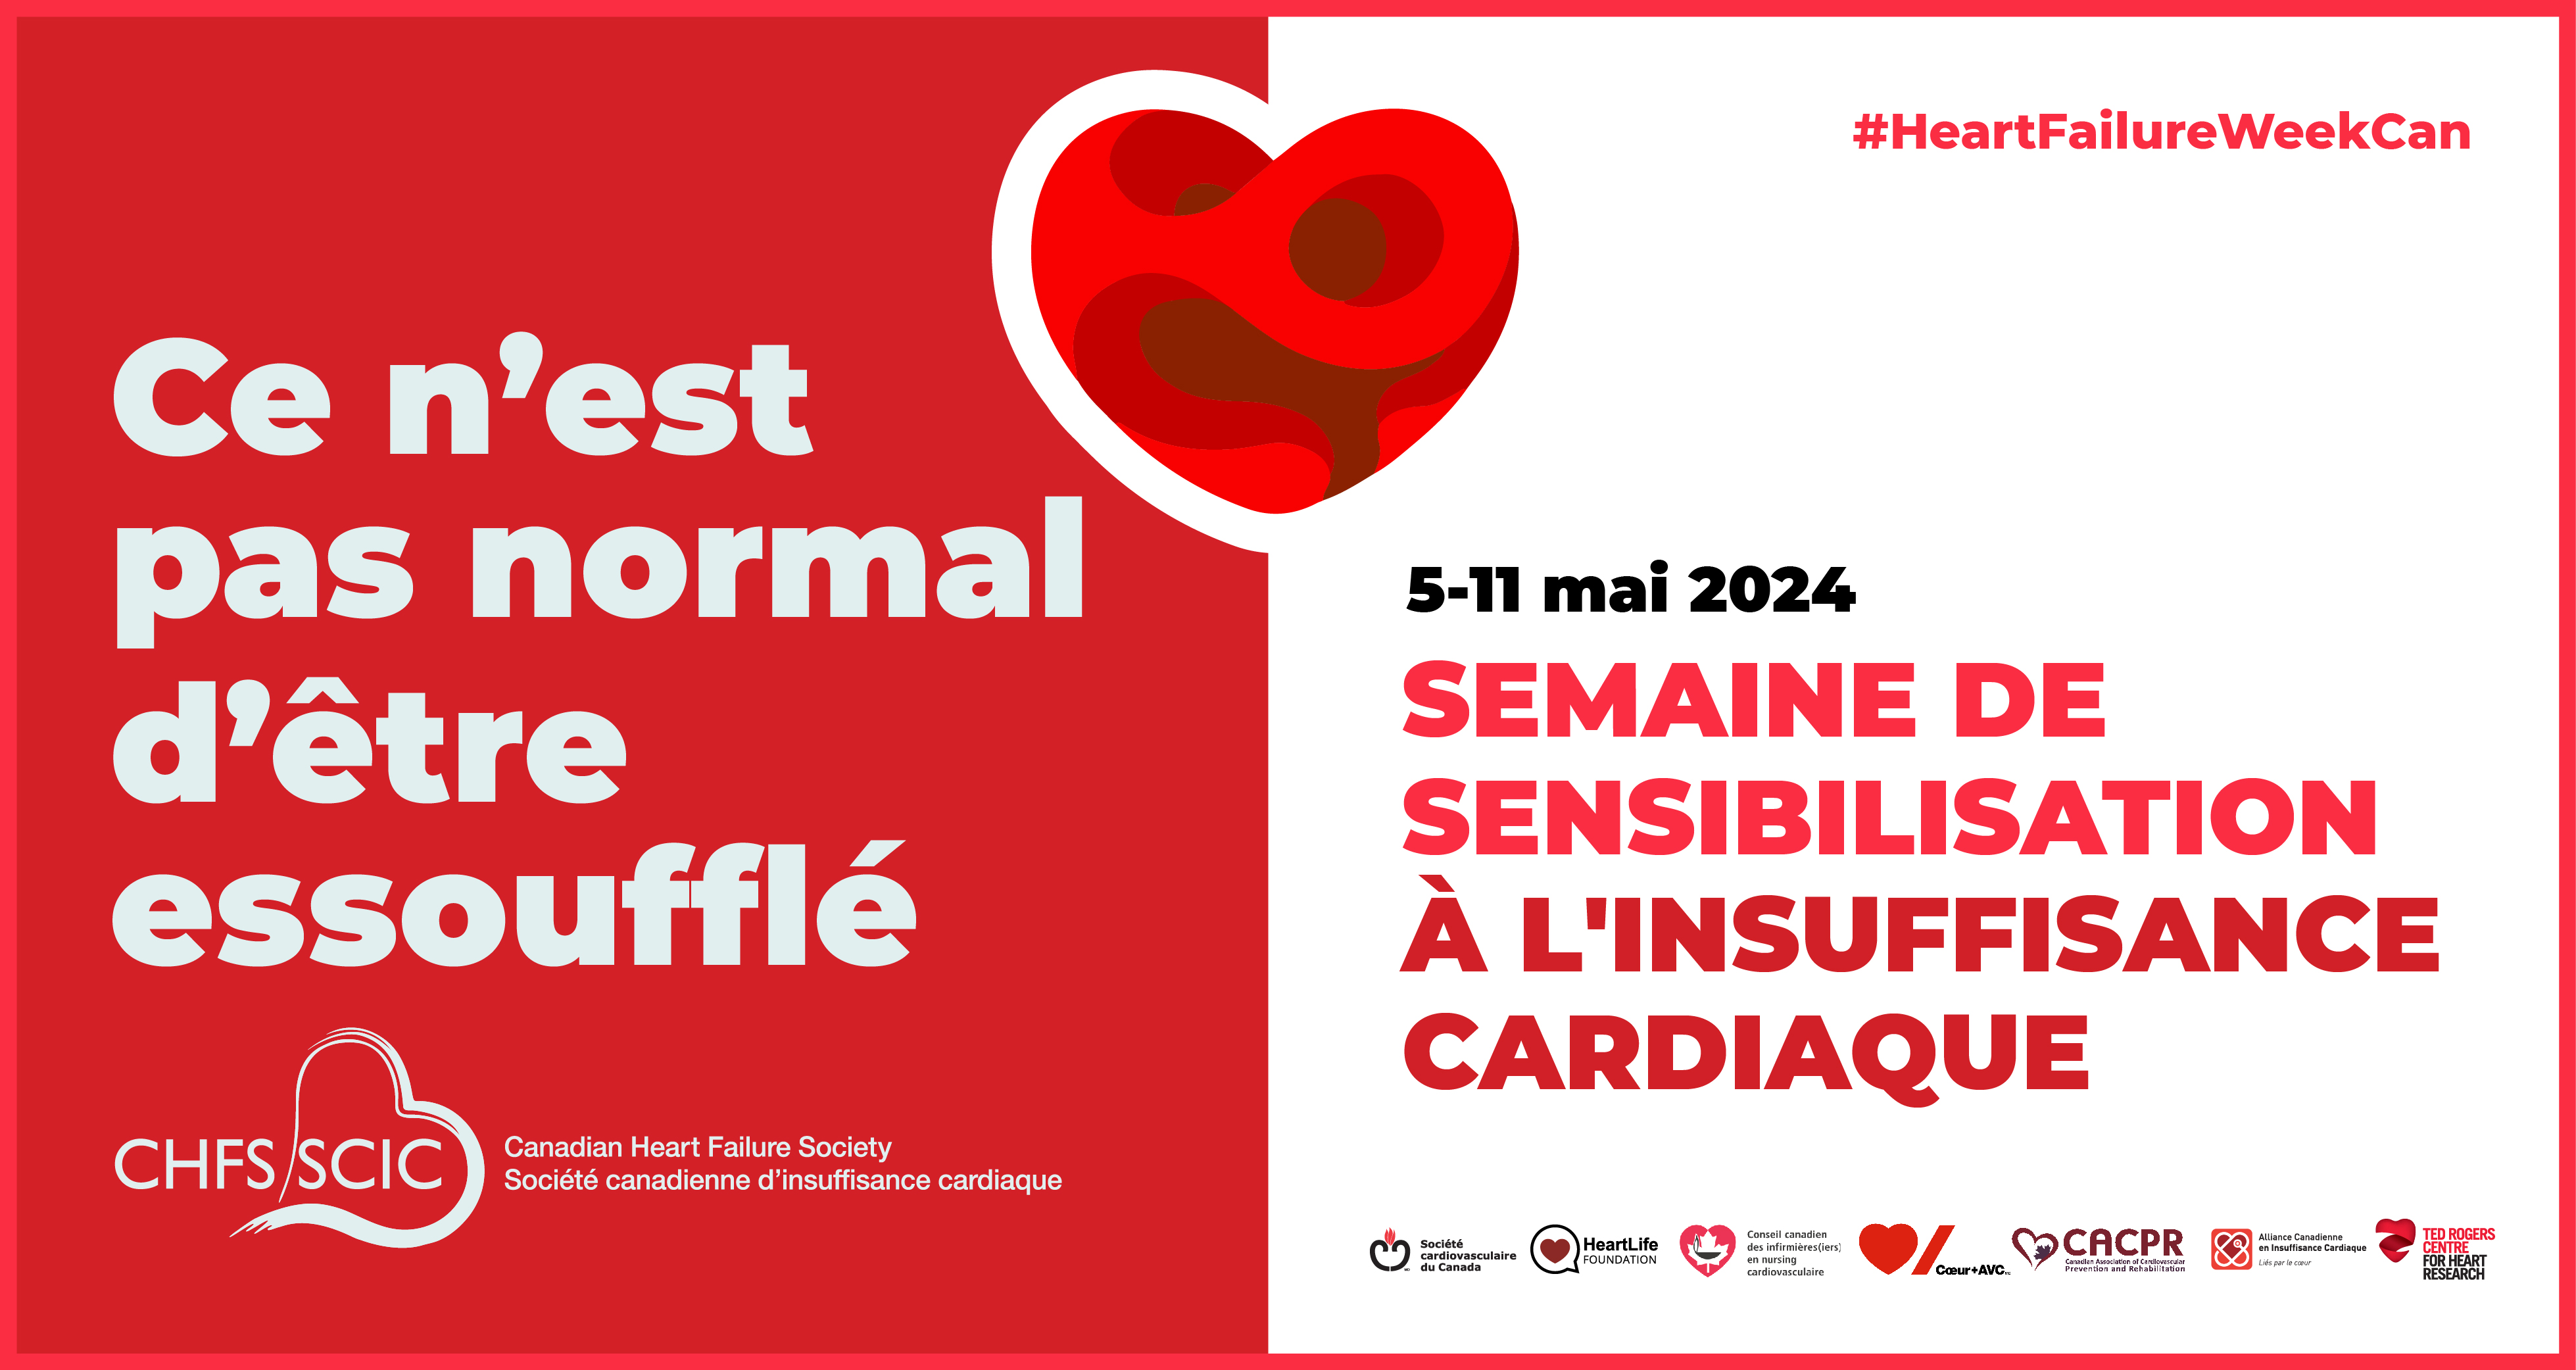 Affiche pour la Semaine nationale de sensibilisation à l’insuffisance cardiaque ayant lieu du 5 au 11 mai 2024.